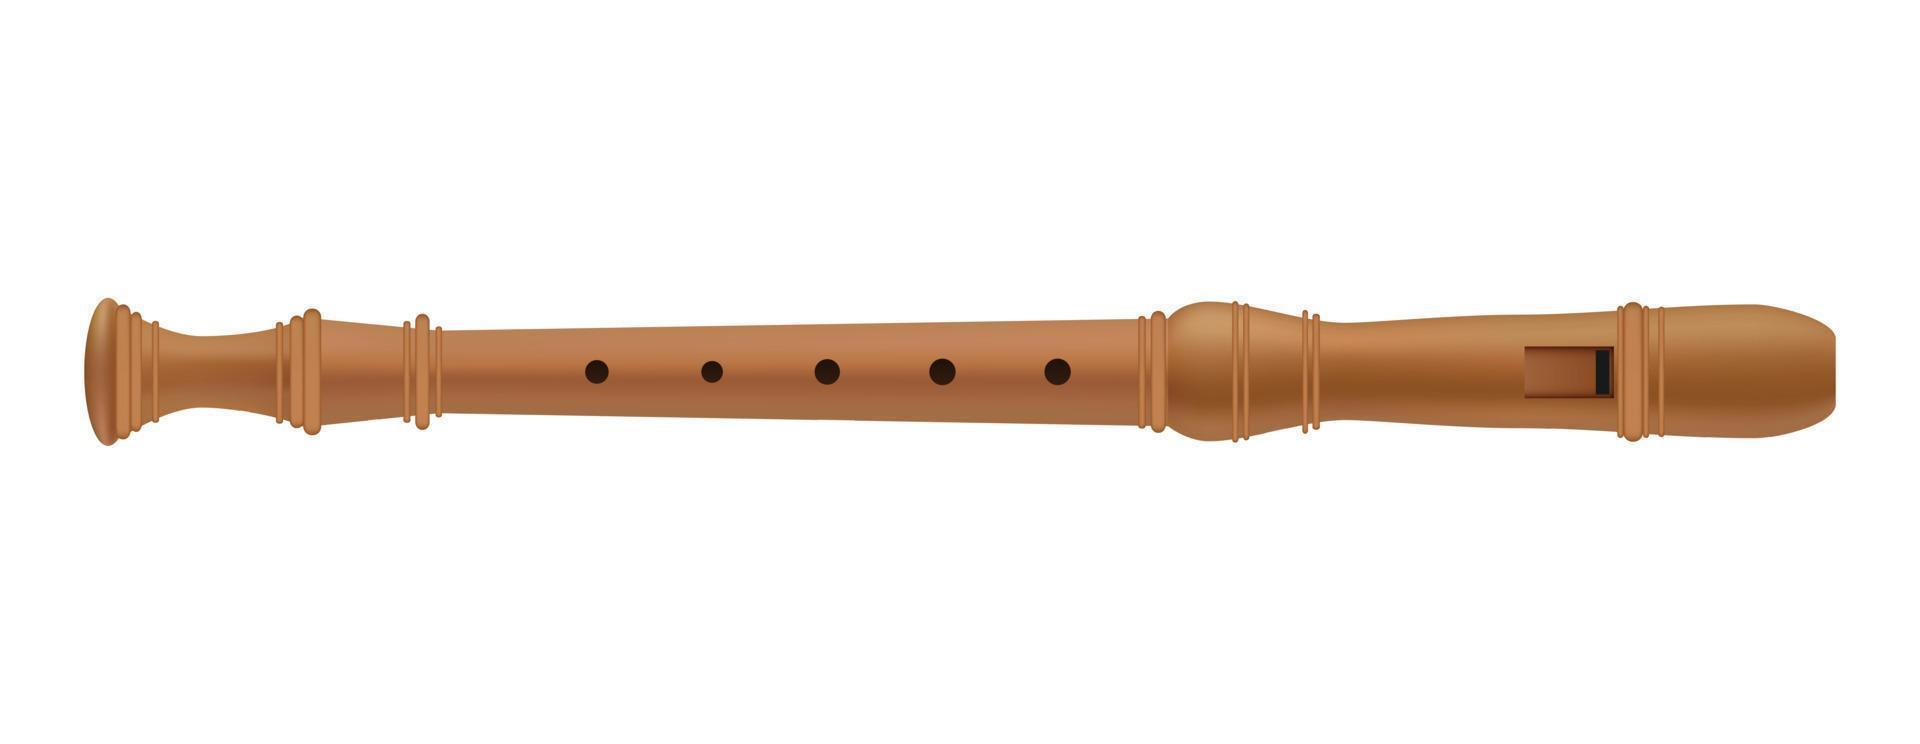 flauta musical de maqueta de madera, estilo realista vector